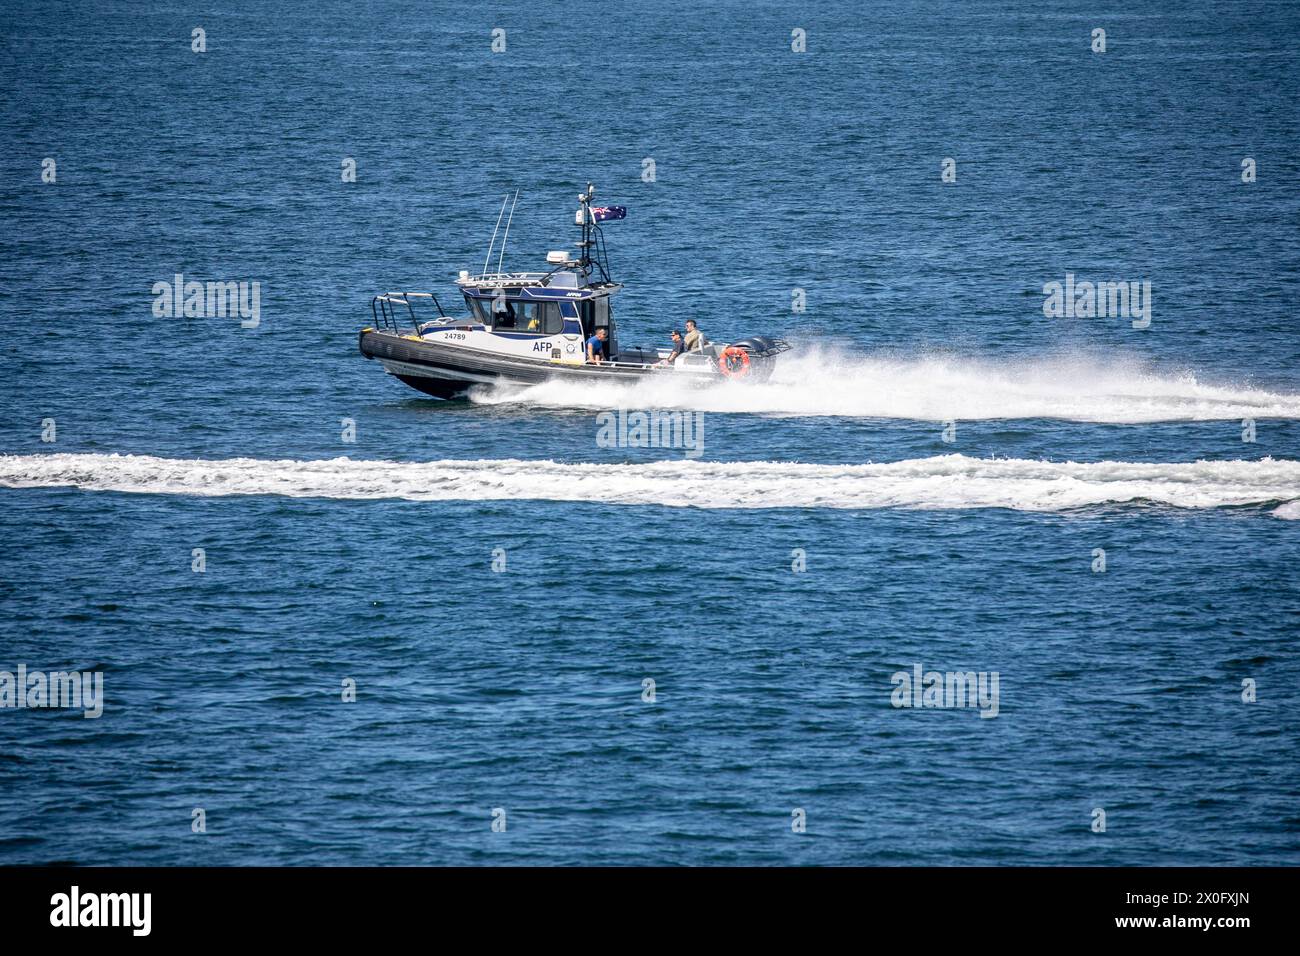 La police fédérale australienne, l'agence fédérale australienne chargée de l'application de la loi, avec son bateau RIB à grande vitesse AFP10 sur le port de Sydney, un bateau construit par Yamba Banque D'Images